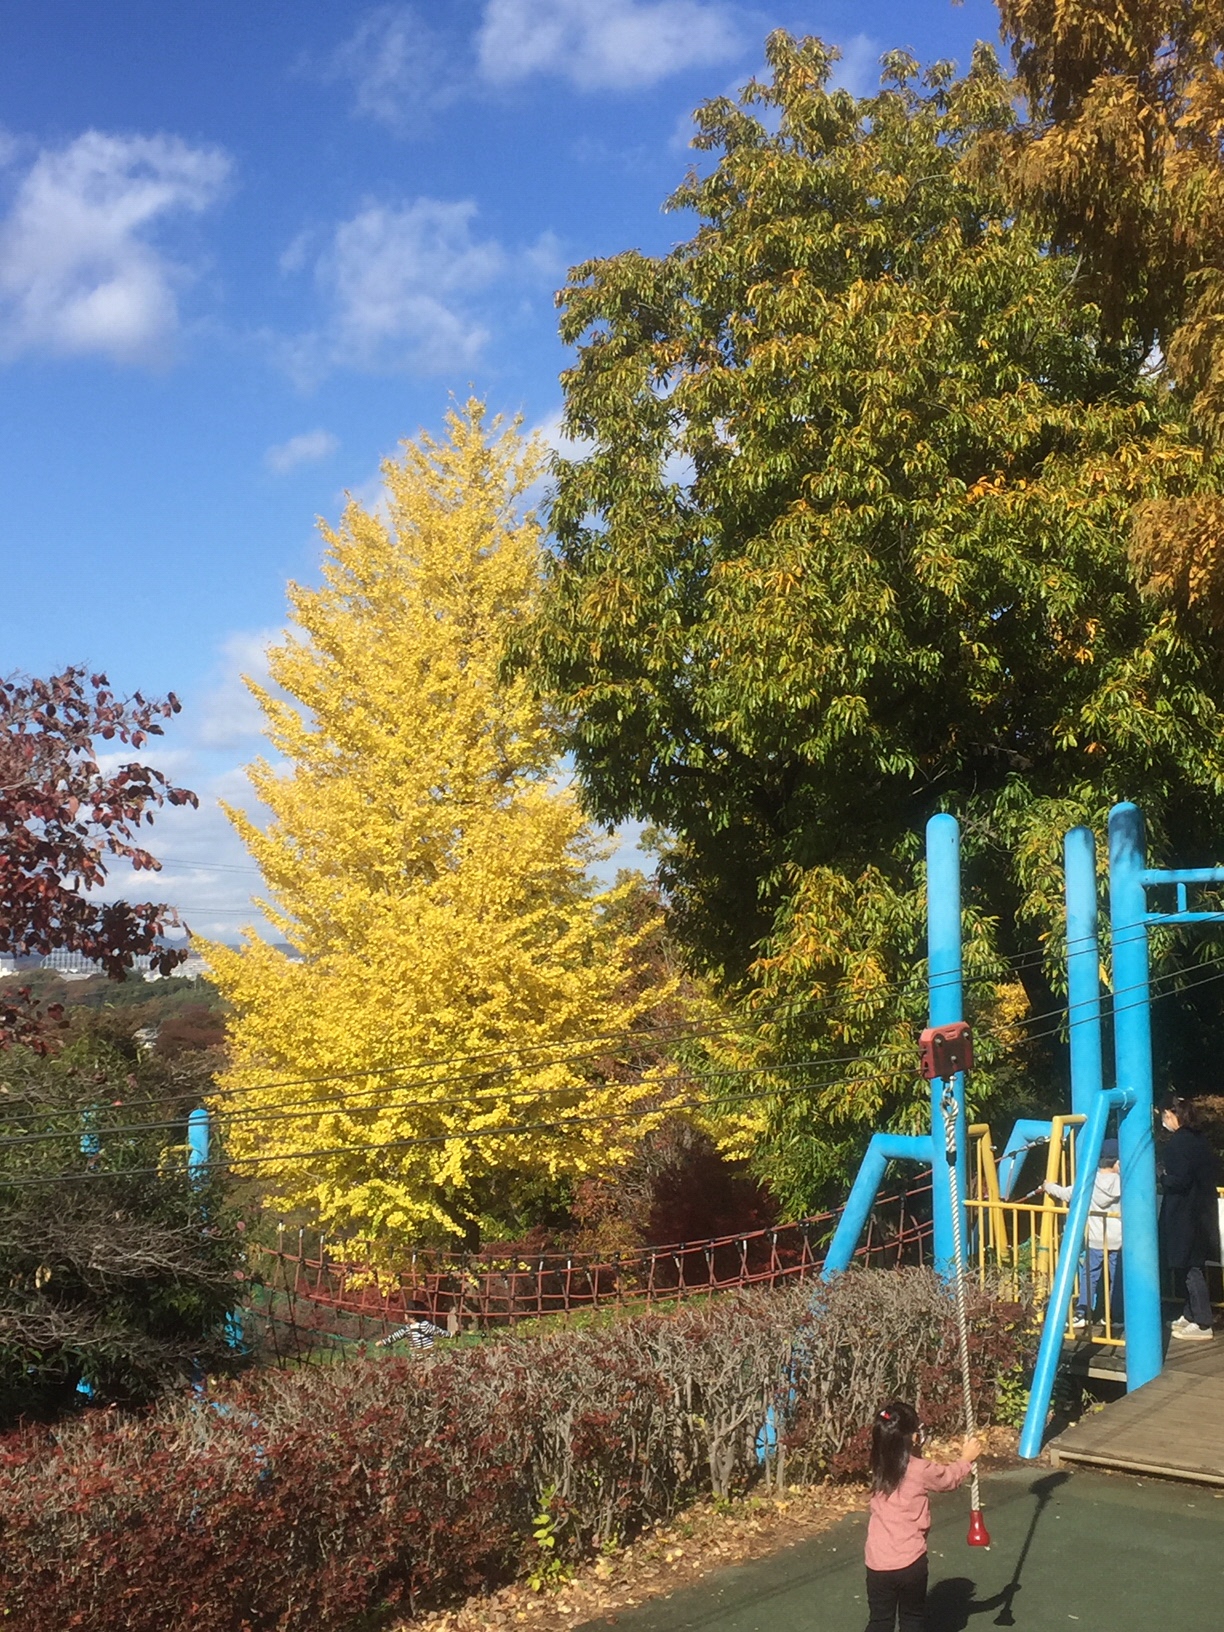 ぼうさいの丘公園の遊具で遊ぶ子供と黄色く色づいた大きなイチョウの木